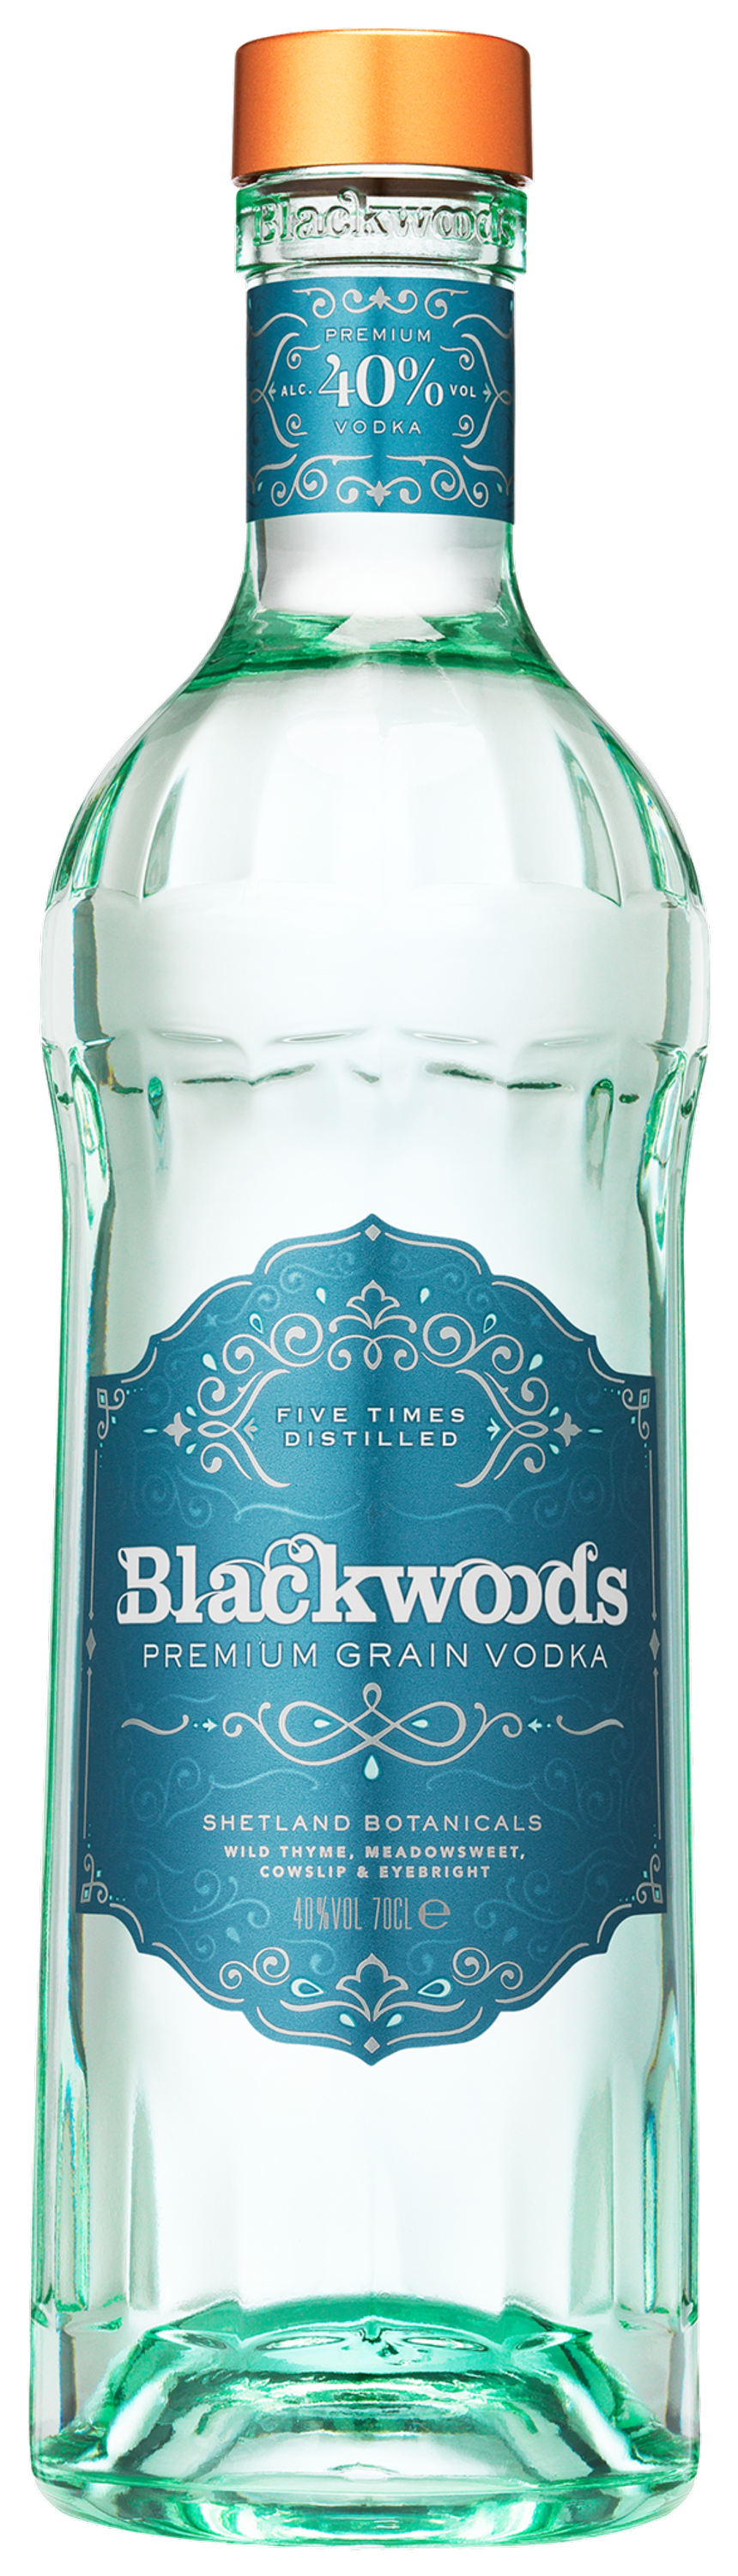 Blackwood's Premium Vodka 0.7l, alc. 40% Vol, Vodka Scotland